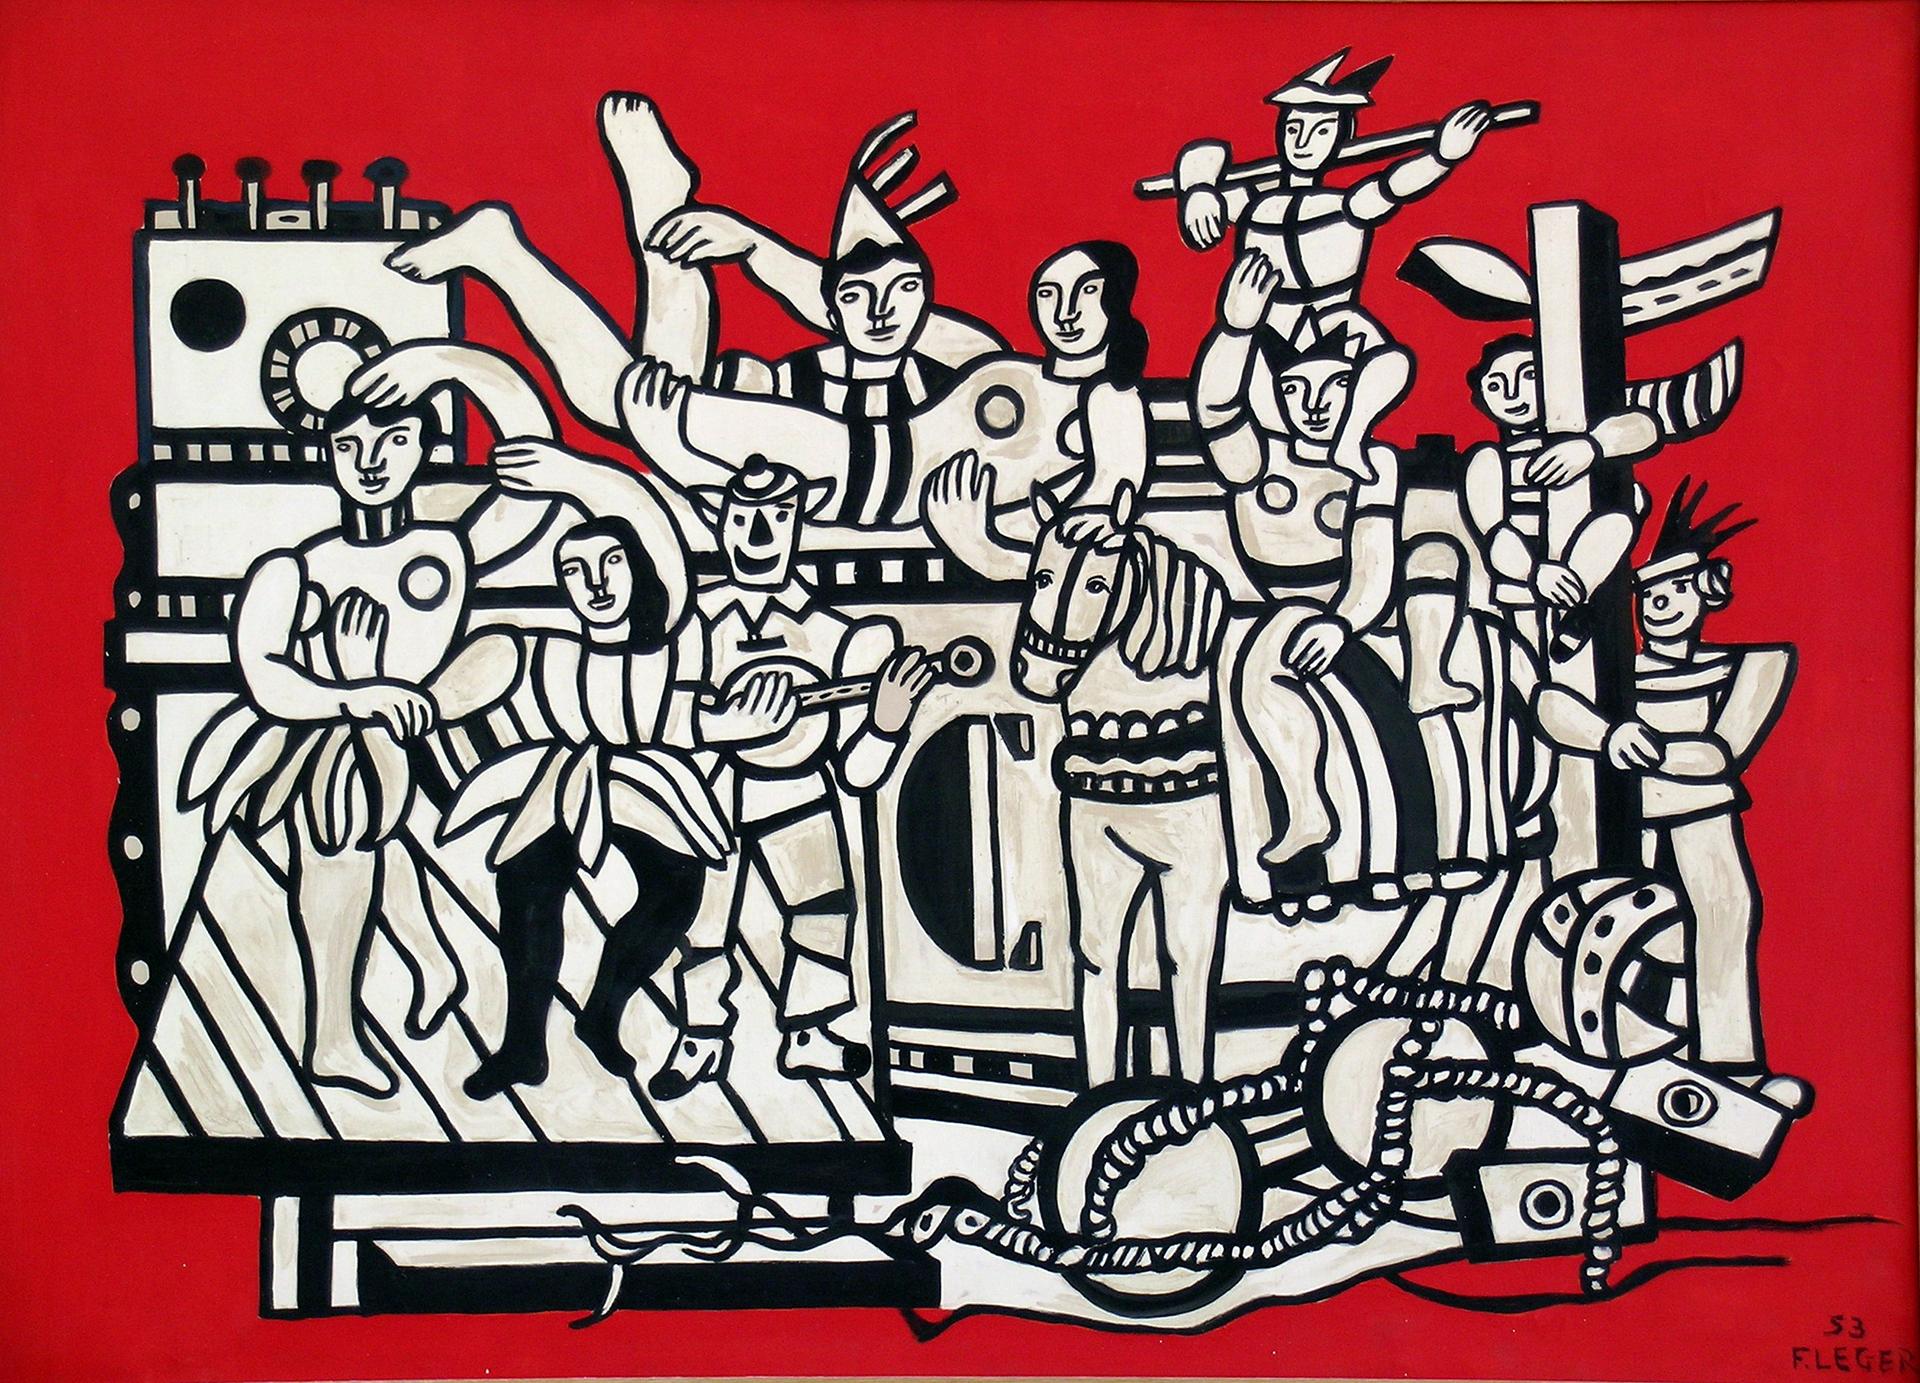 Fernand Léger, La Grande parade sur fond rouge, 1953, musée national Fernand Léger, Biot. Photo RMN-Grand Palais/ Gérard Blot © ADAGP, Paris, 2018.